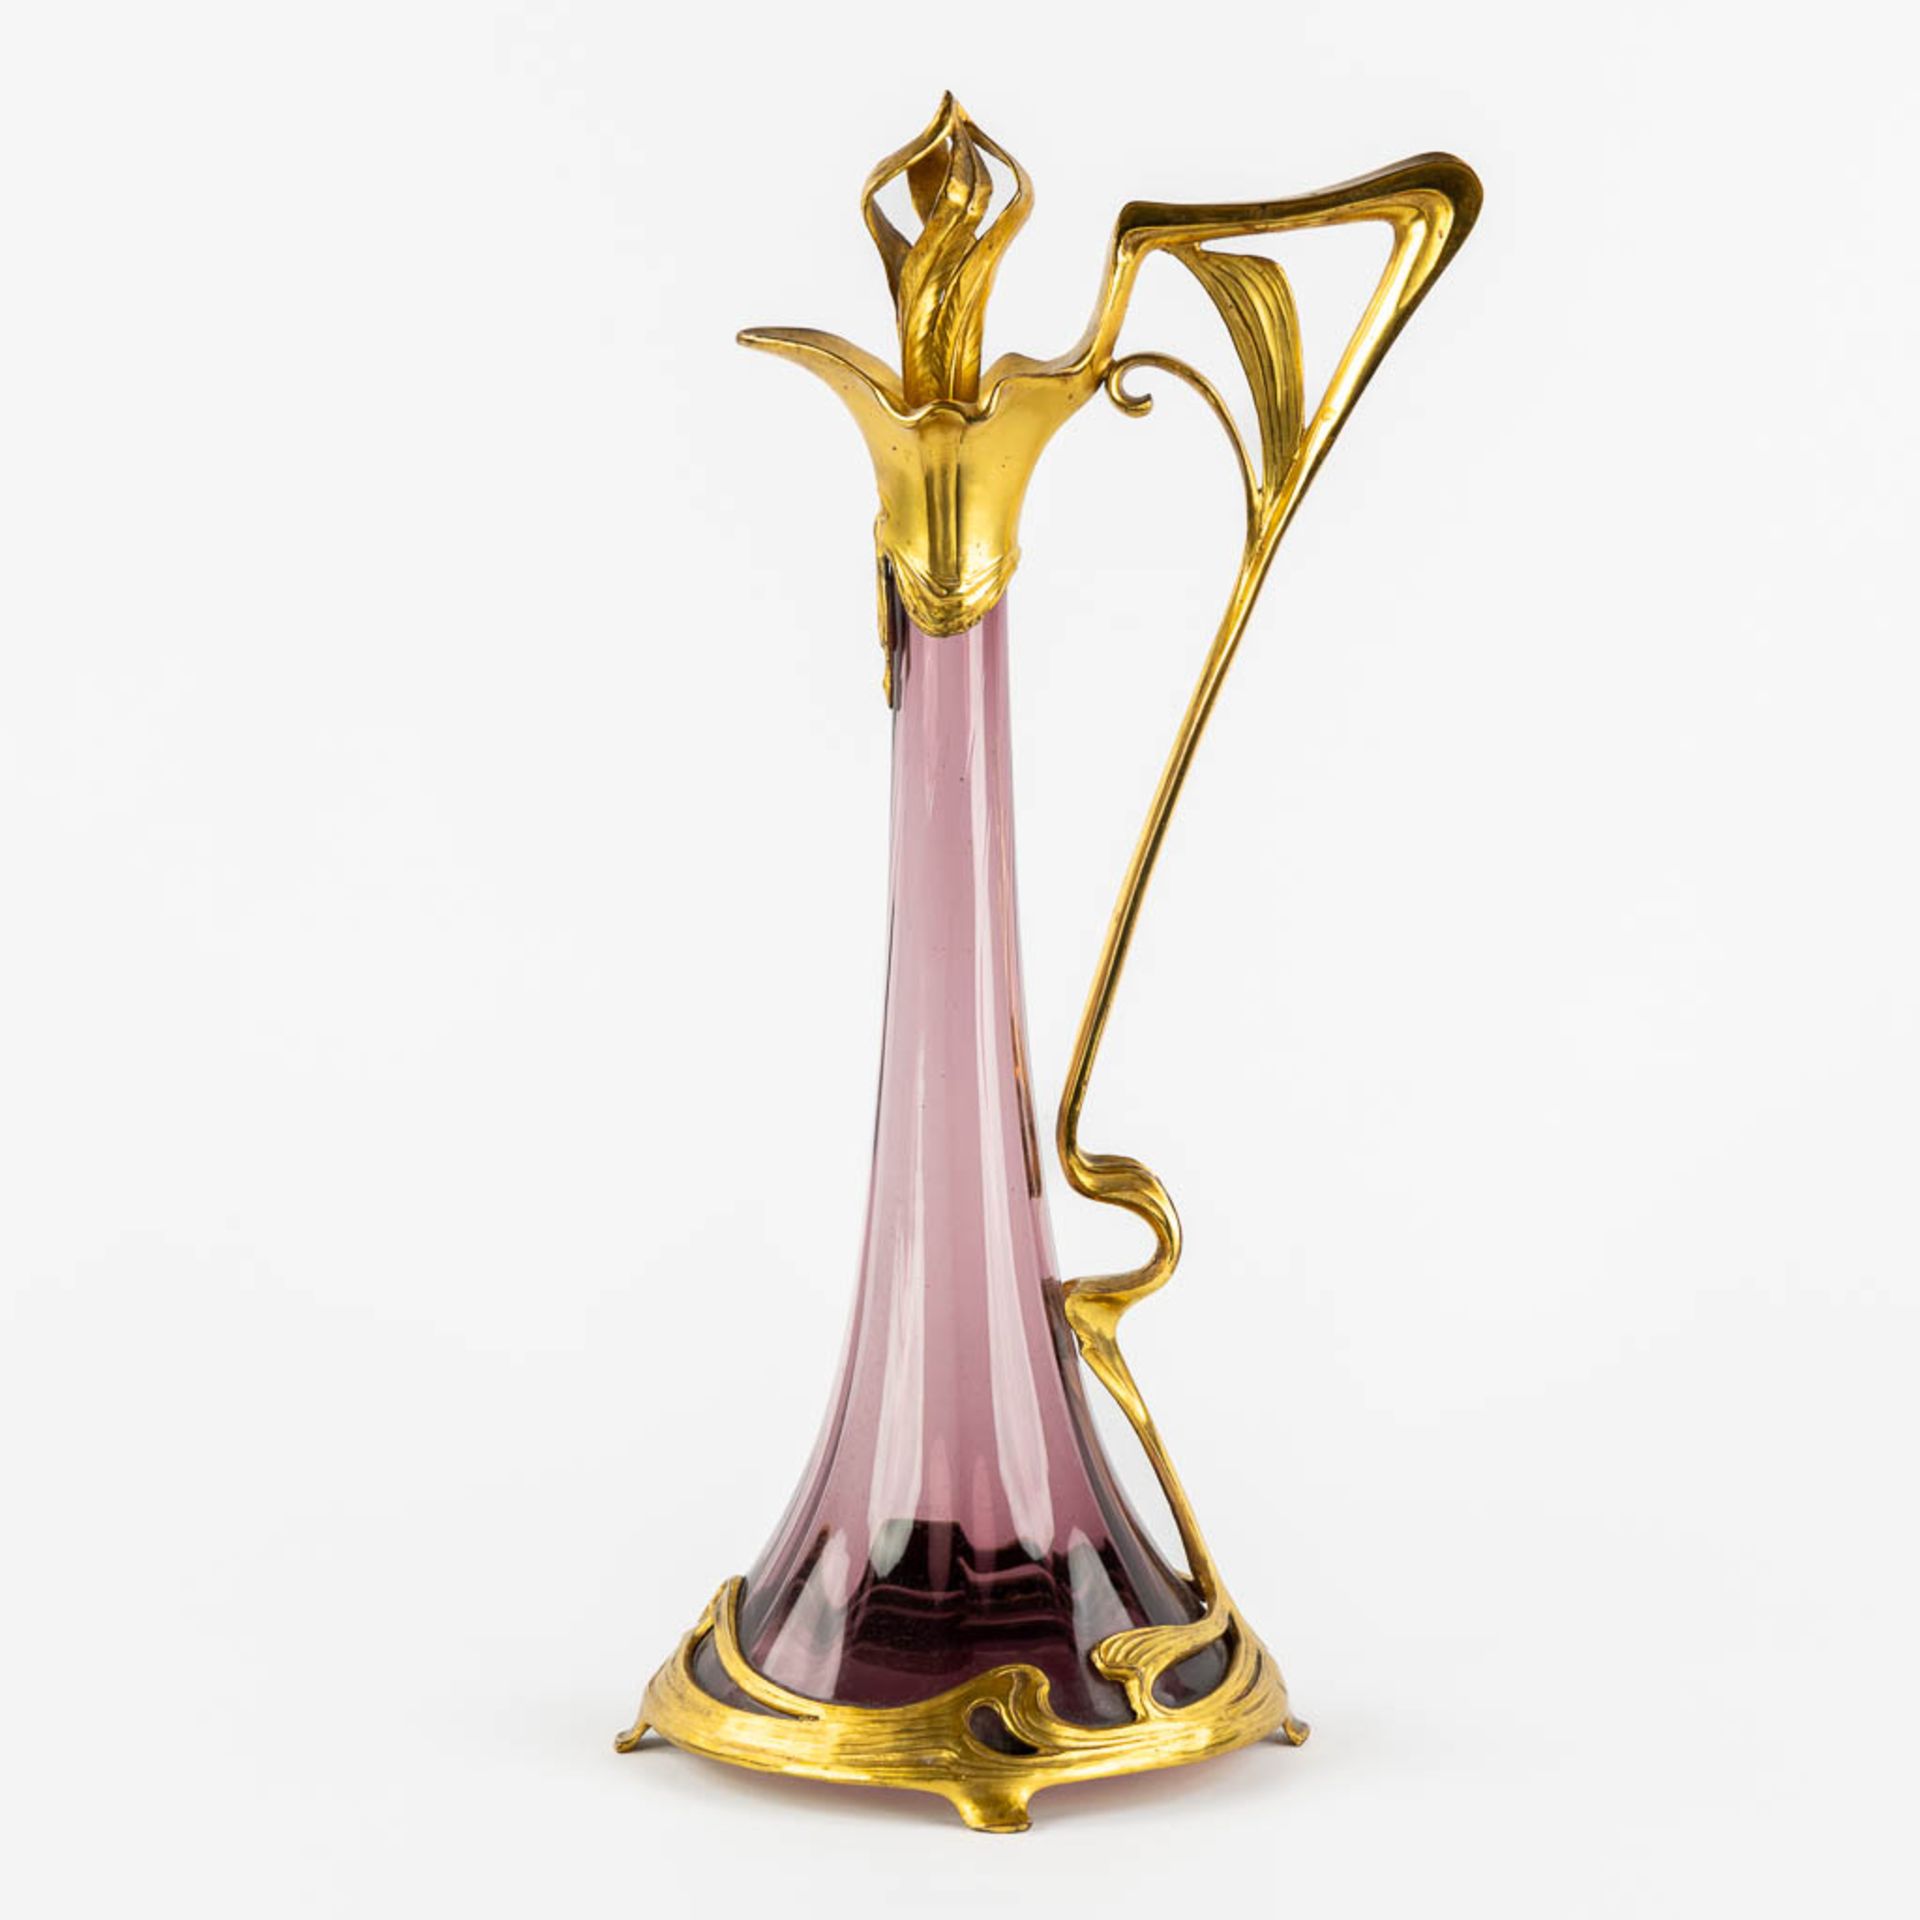 A pitcher, gilt metal and purple glass, Art Nouveau. (L:16 x W:20 x H:39 cm) - Image 5 of 11